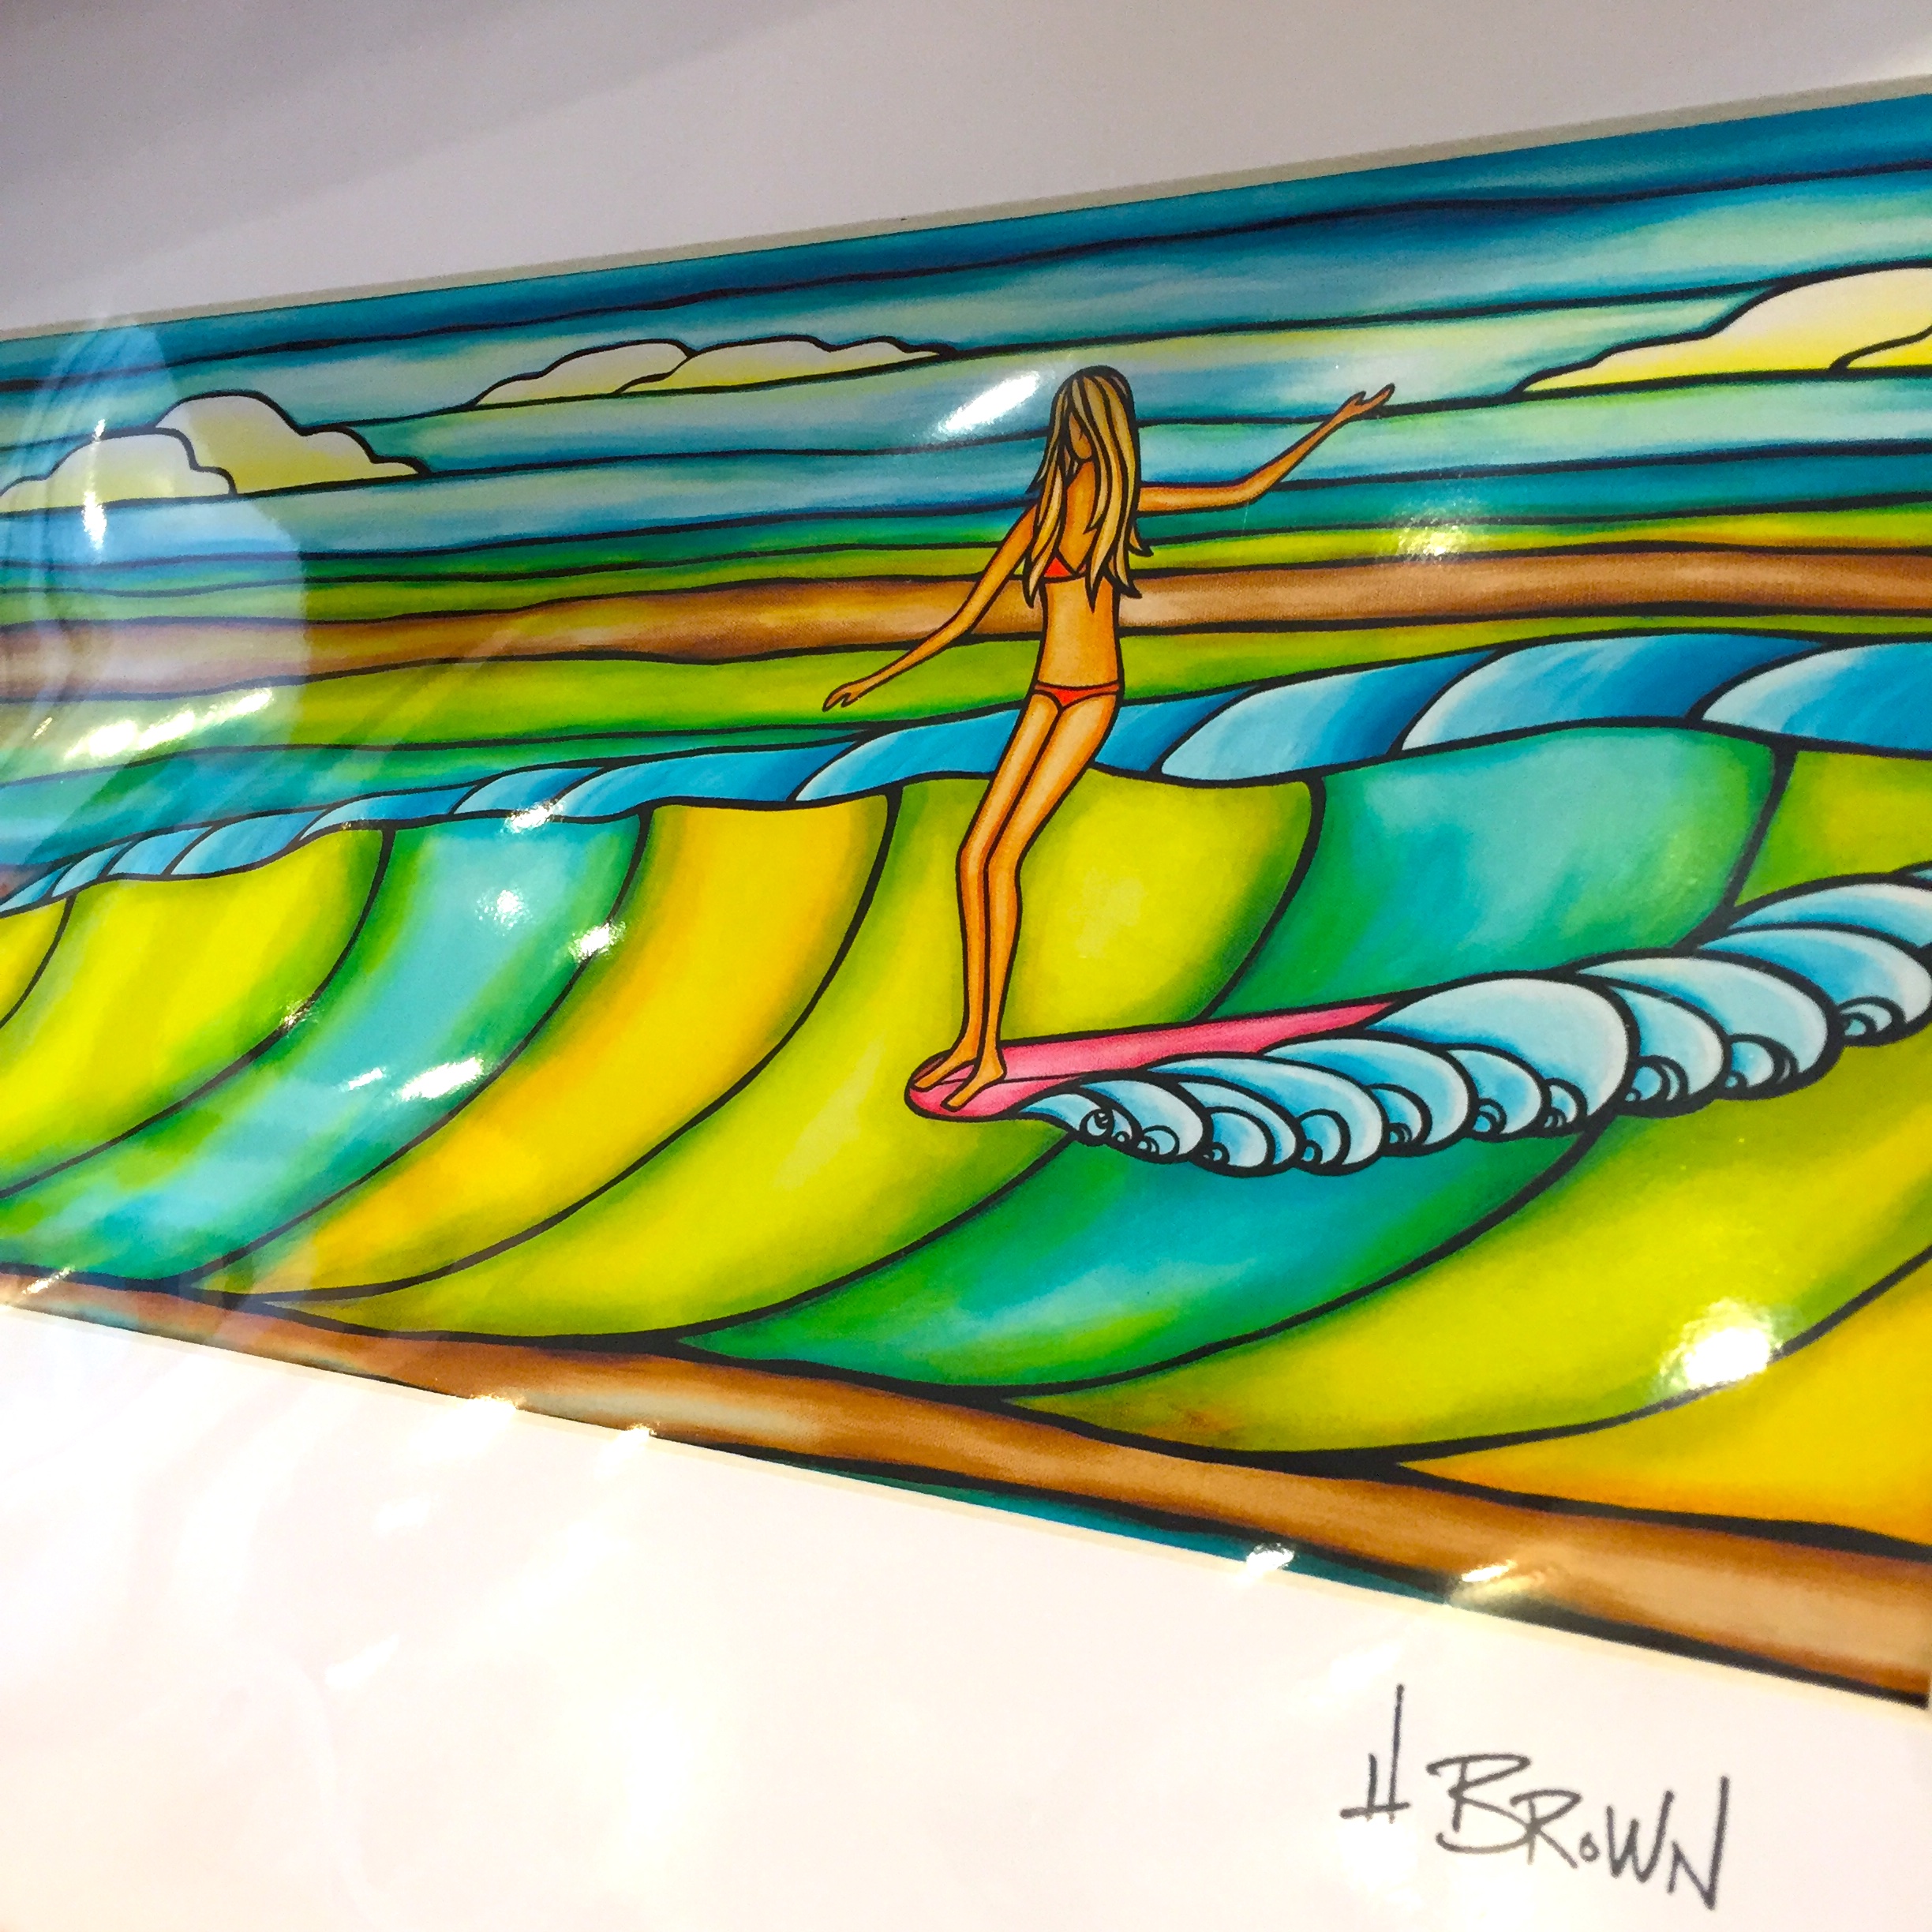 ヘザー ブラウンアート オーストラリア店 Awsm Surf オーサムサーフ サーフ スケート オーガニック